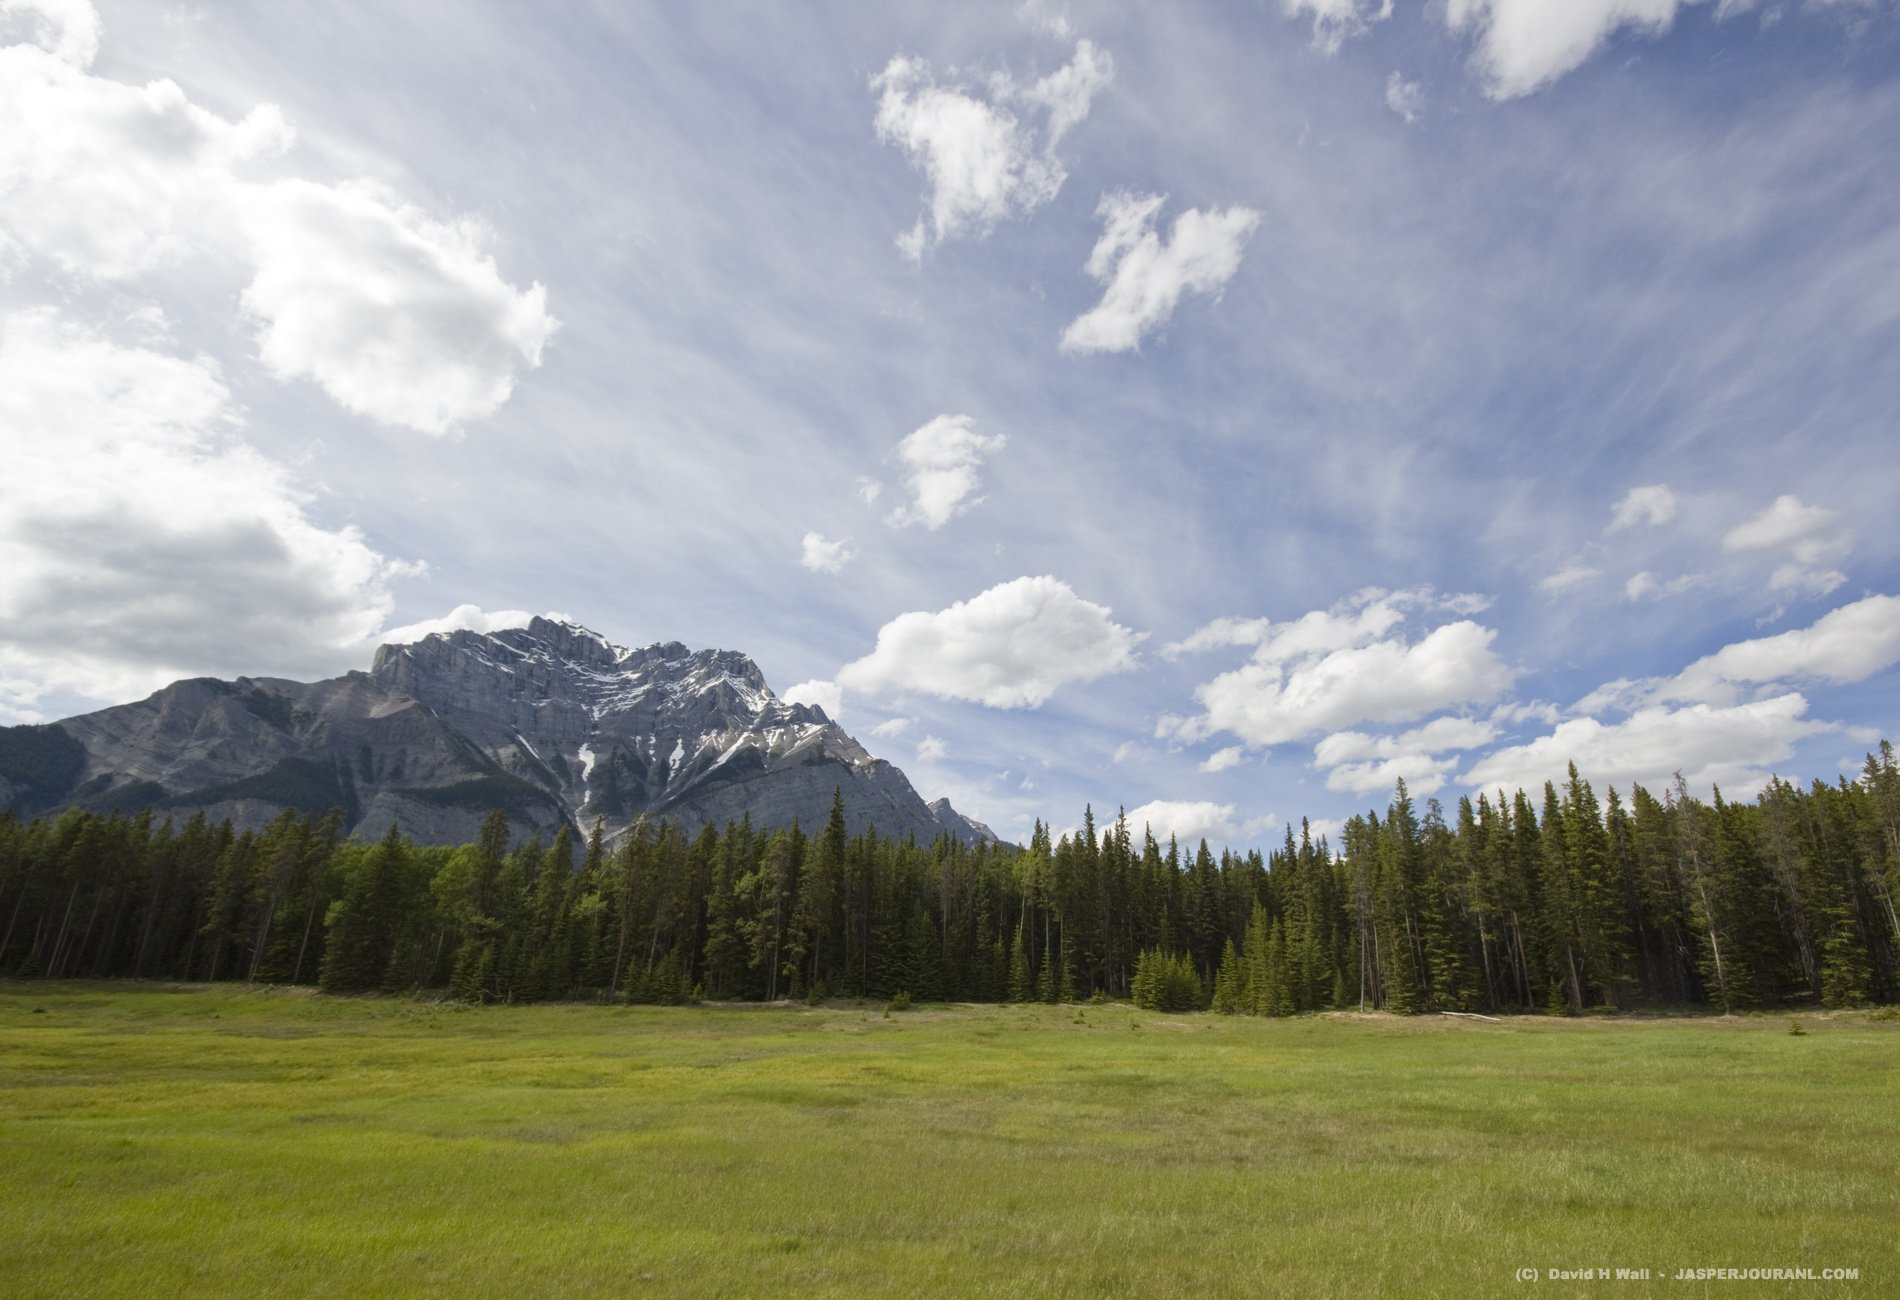  Desktop Wallpaper Banff National Park Jasper National Park 1900x1300